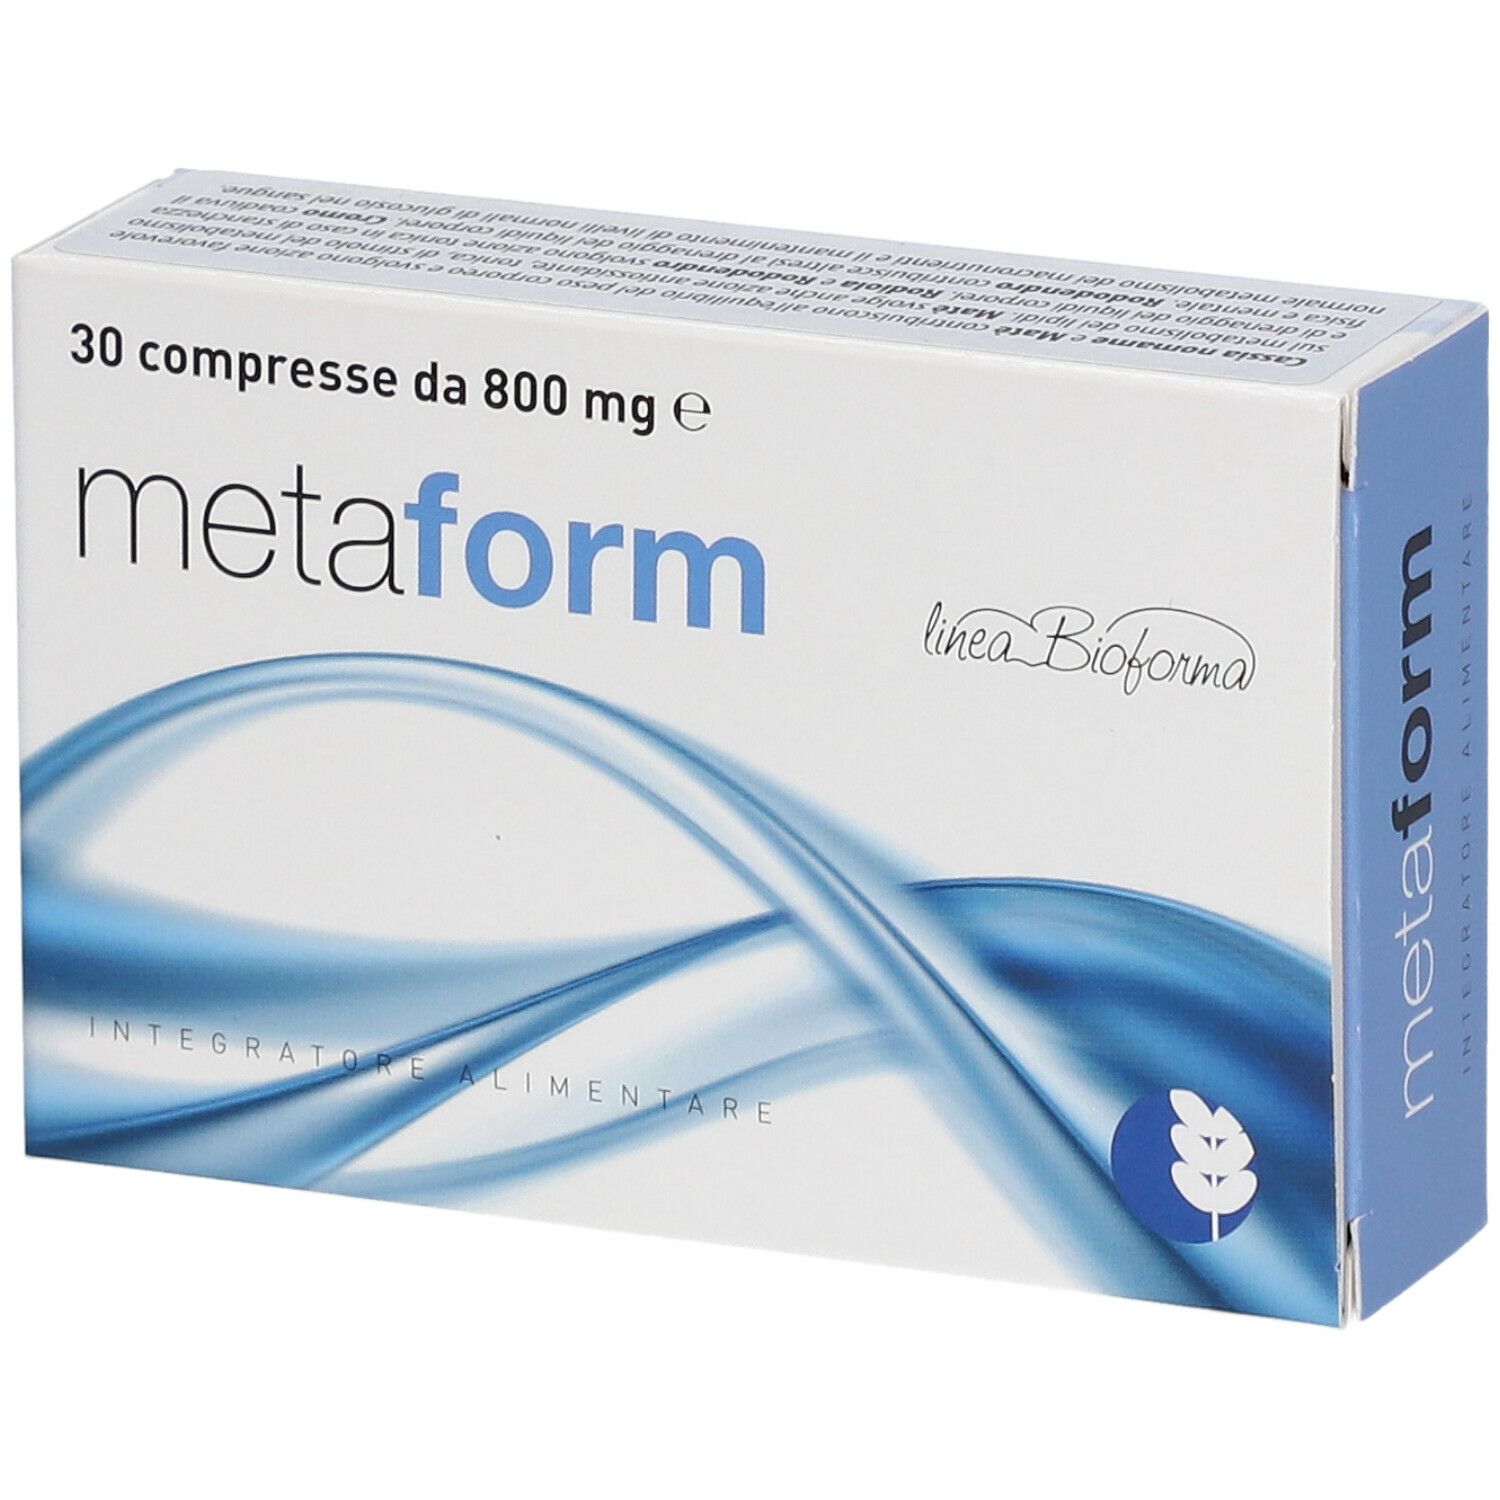  Biogroup Metaform